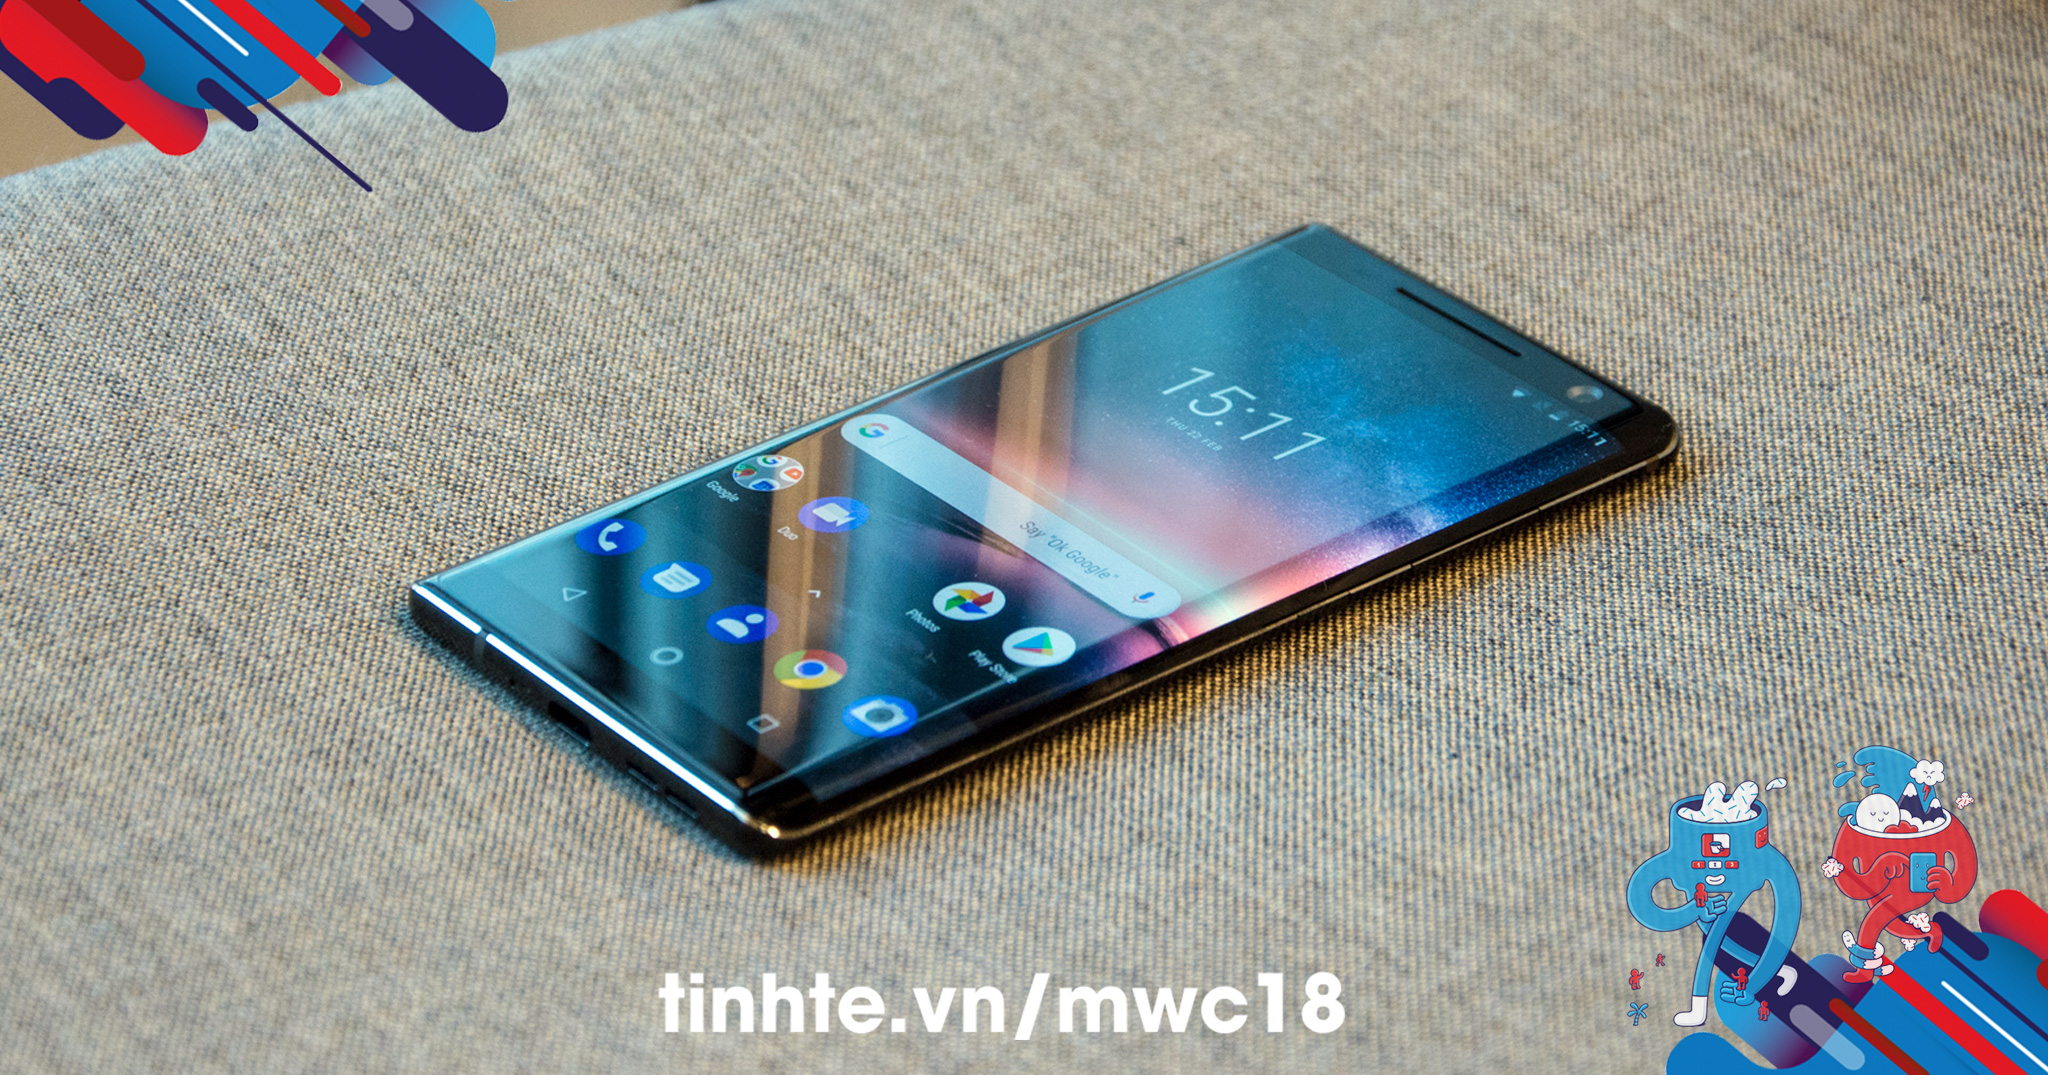 #MWC18: Bạn sẽ mua chiếc Nokia Android nào?